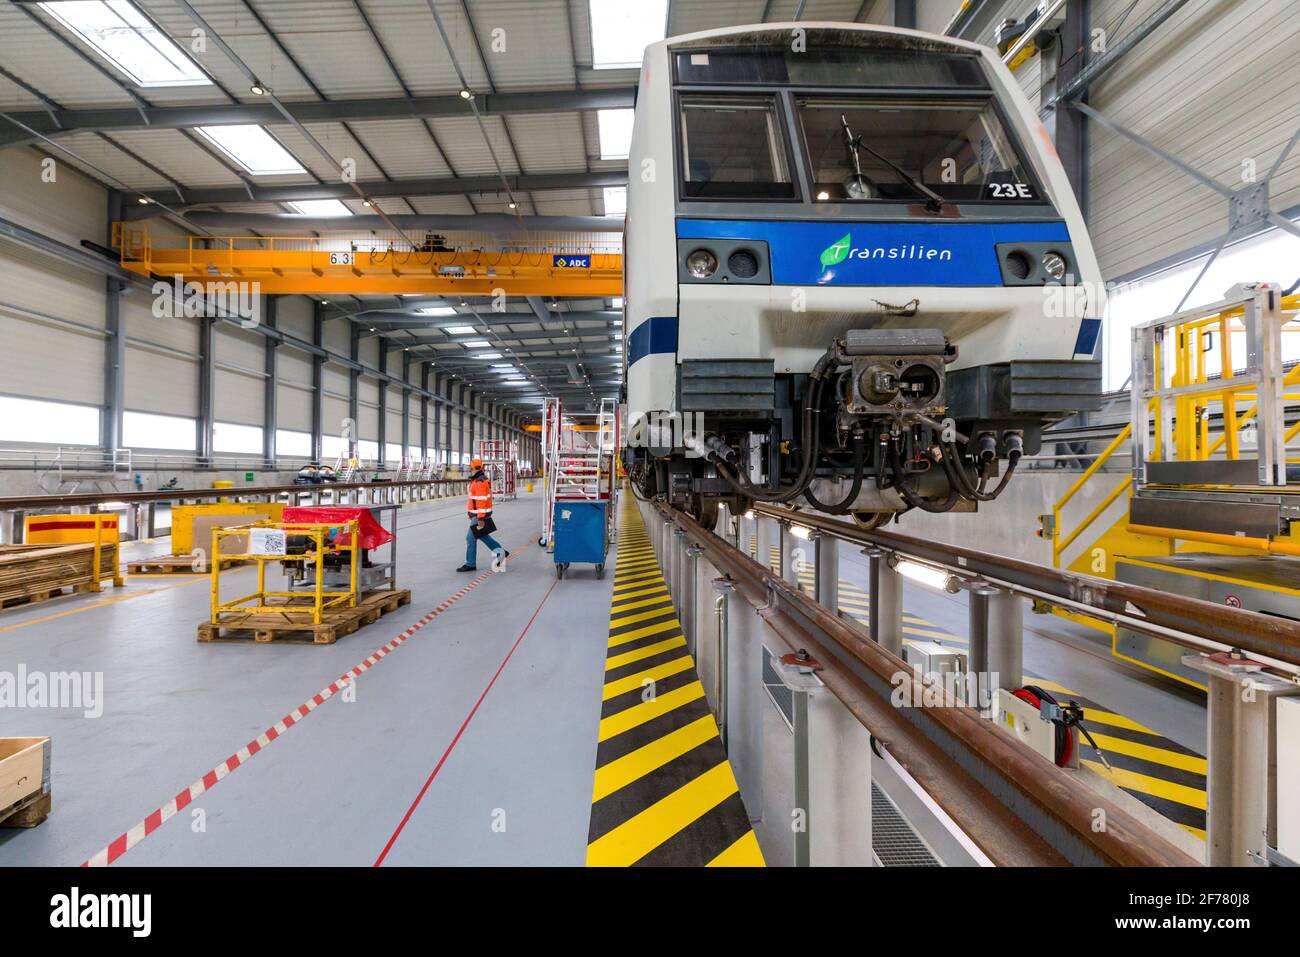 Frankreich, Indre et Loire, Saint-Pierre-des-Corps, SNCF Technicenter, das Industrietechnikcenter von Saint-Pierre-des-Corps, ist spezialisiert auf die komplette Renovierung von S-Bahnen in der Region Île de France, Auf diesem 14 ha großen Gelände arbeiten 650 Mitarbeiter aus rund 40 Gewerken, was ihre Lebensdauer verdoppelt, und im November 2020 eröffnete das Technicenter eine brandneue 4,000 m2 große Werkstatt, in der ganze Züge über ihre gesamte Länge geparkt werden können Stockfoto